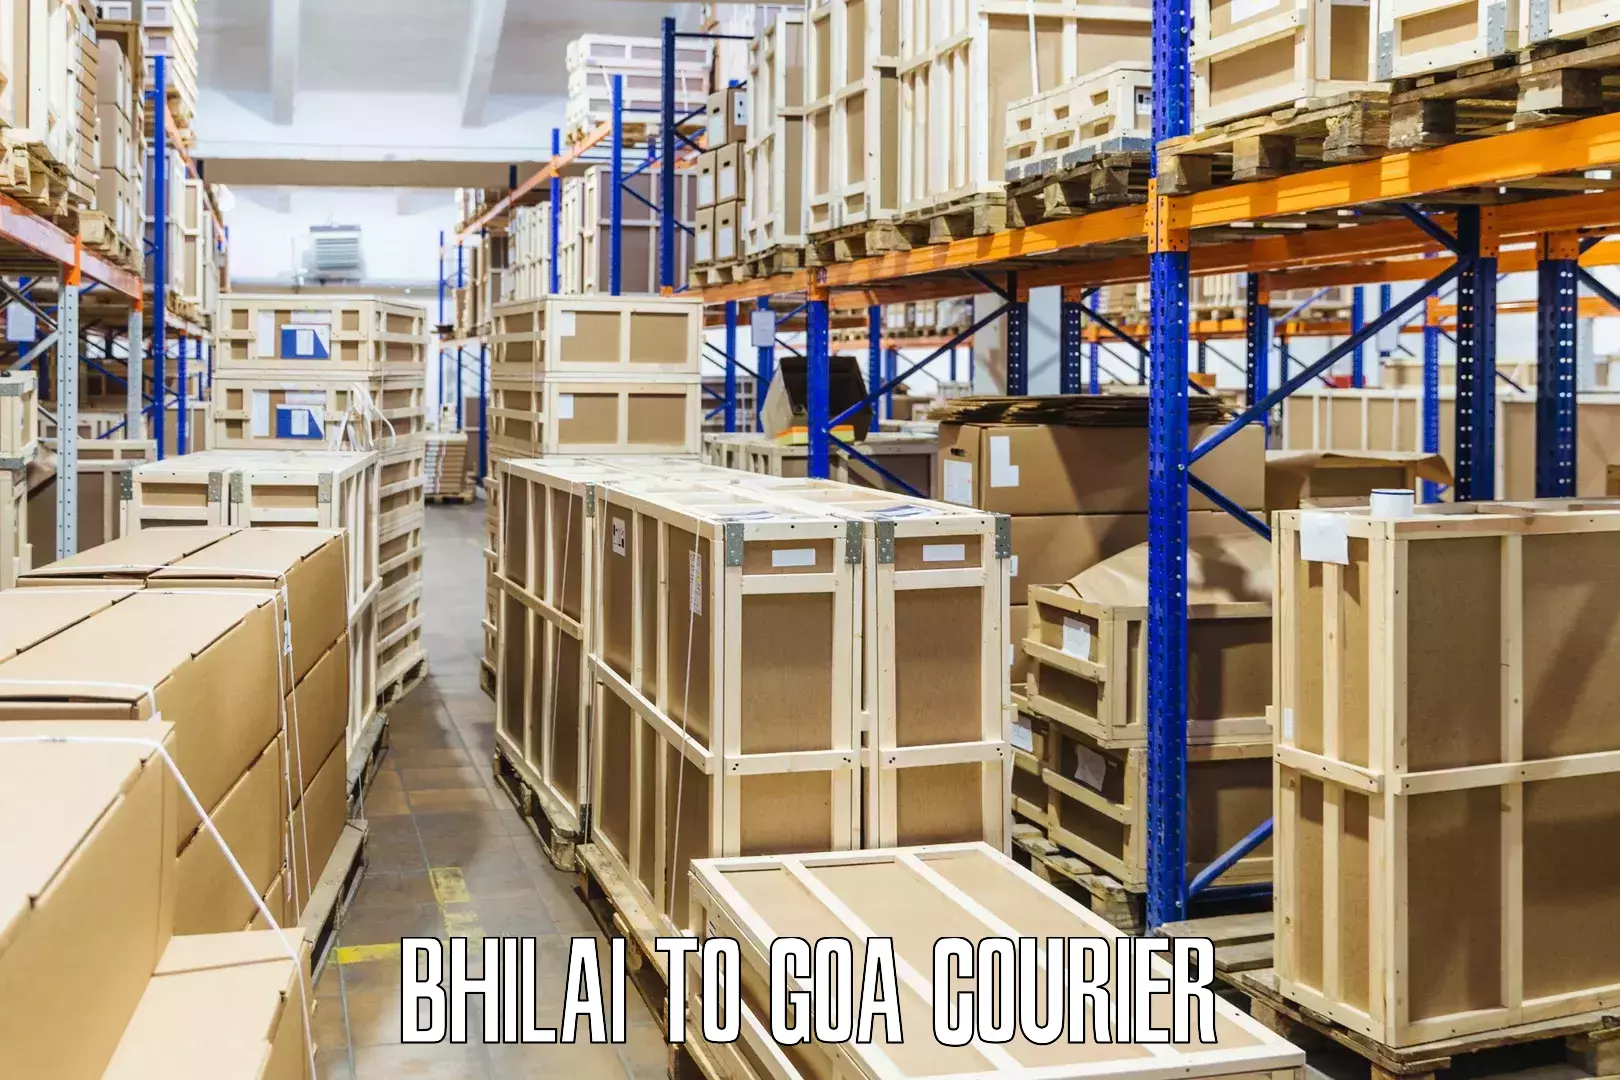 User-friendly courier app Bhilai to Canacona